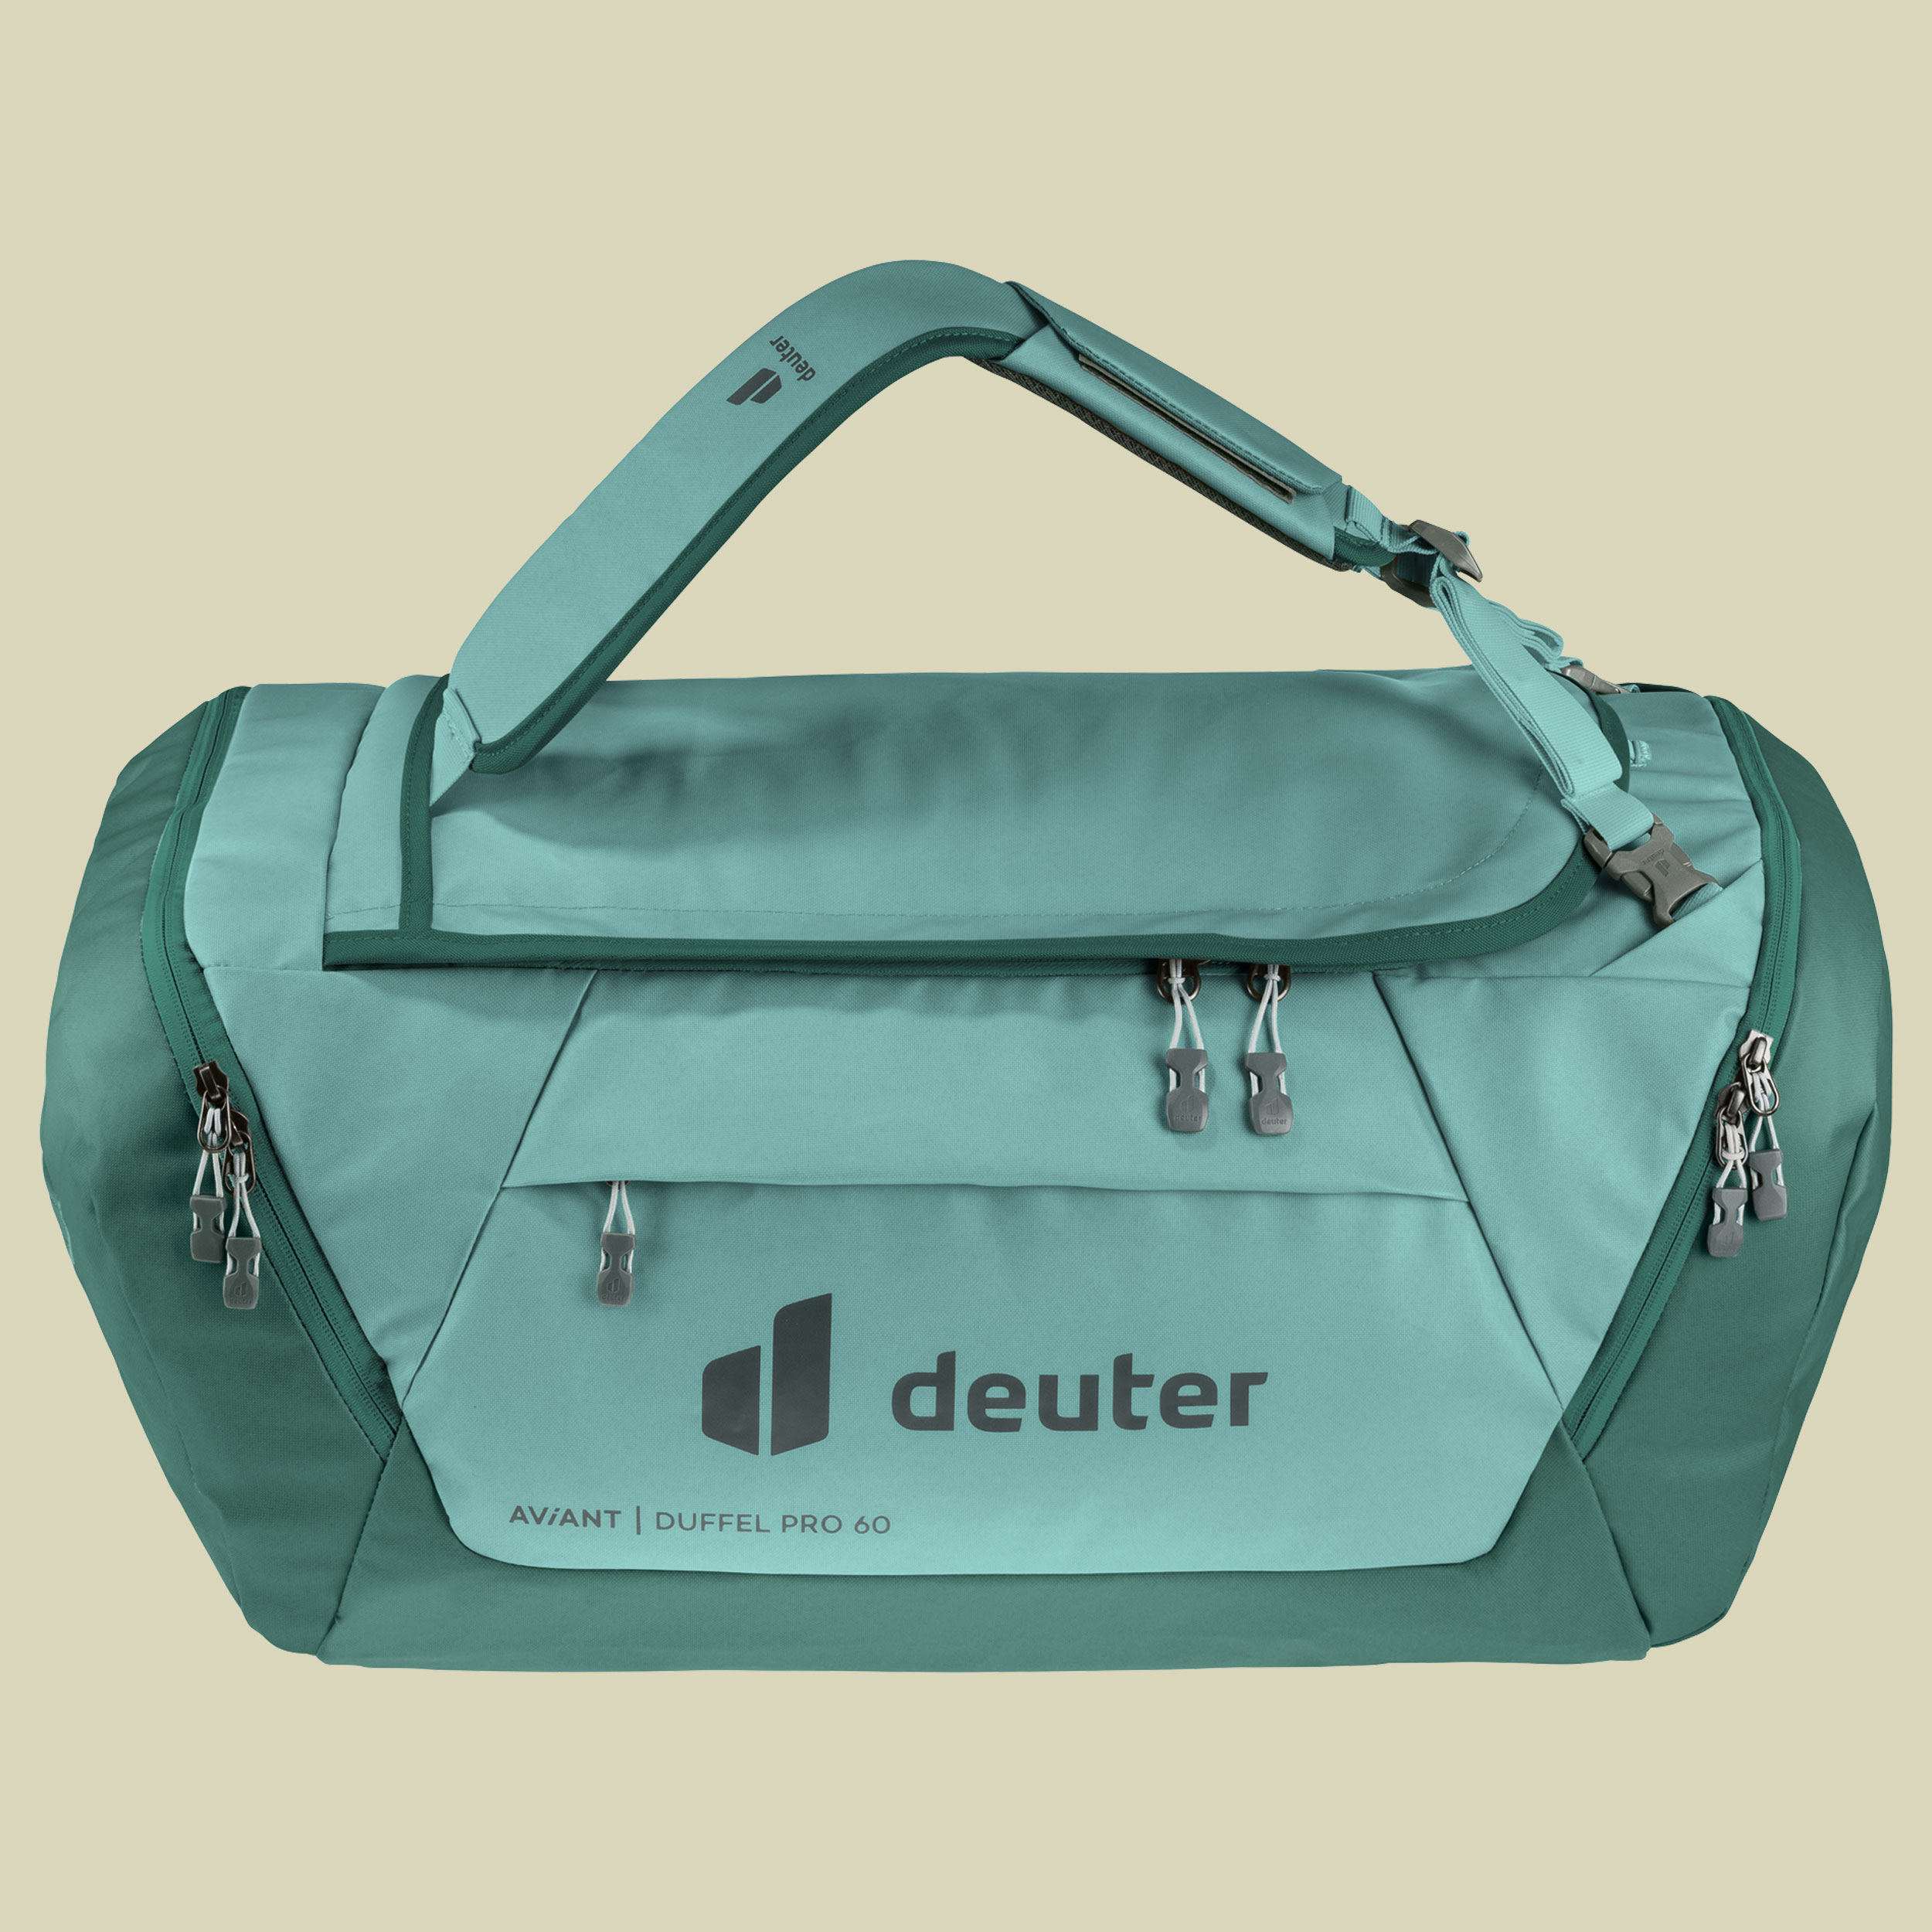 deuter - Tragesystem- in Pro Duffel verstaubarem Handgepäcksgröße AViANT 40-Reisetasche naturzeit mit